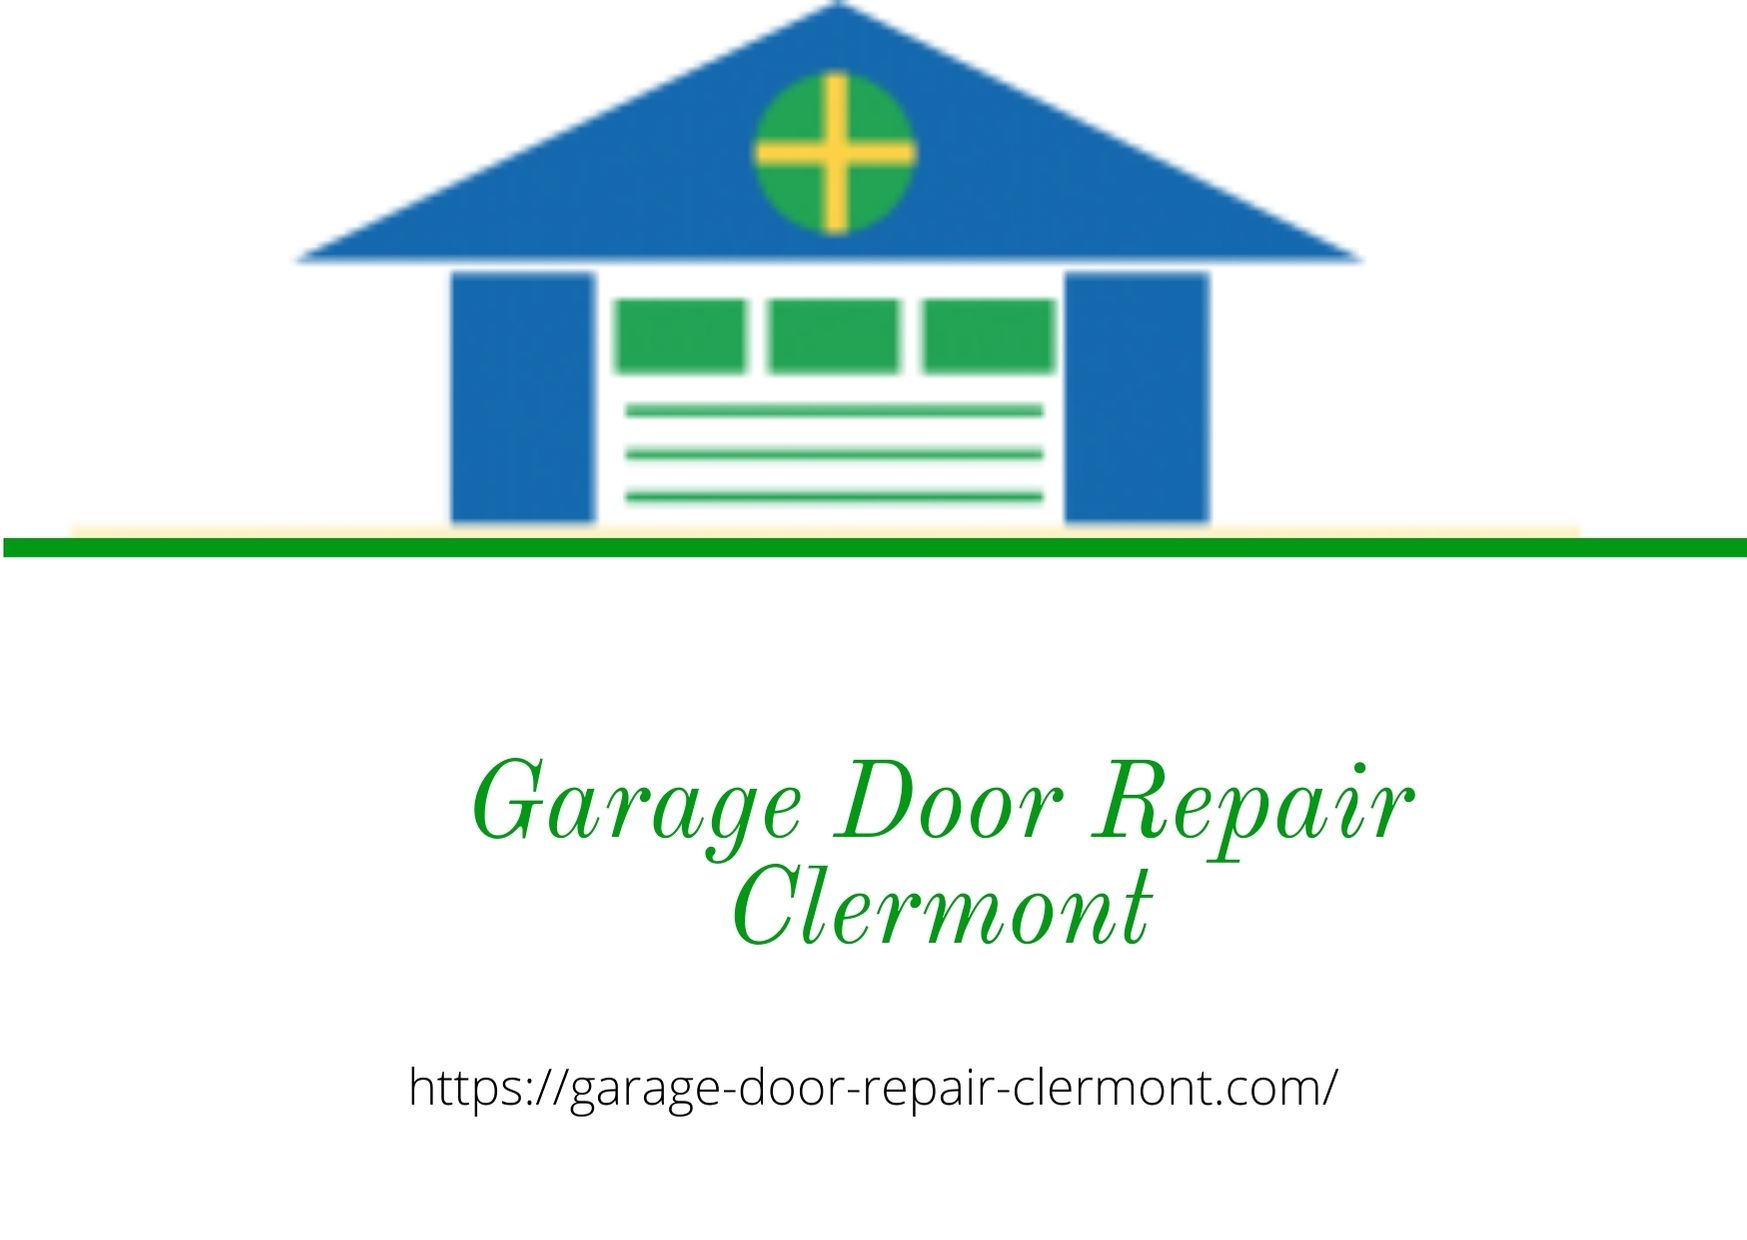 Prime Garage Door Repair